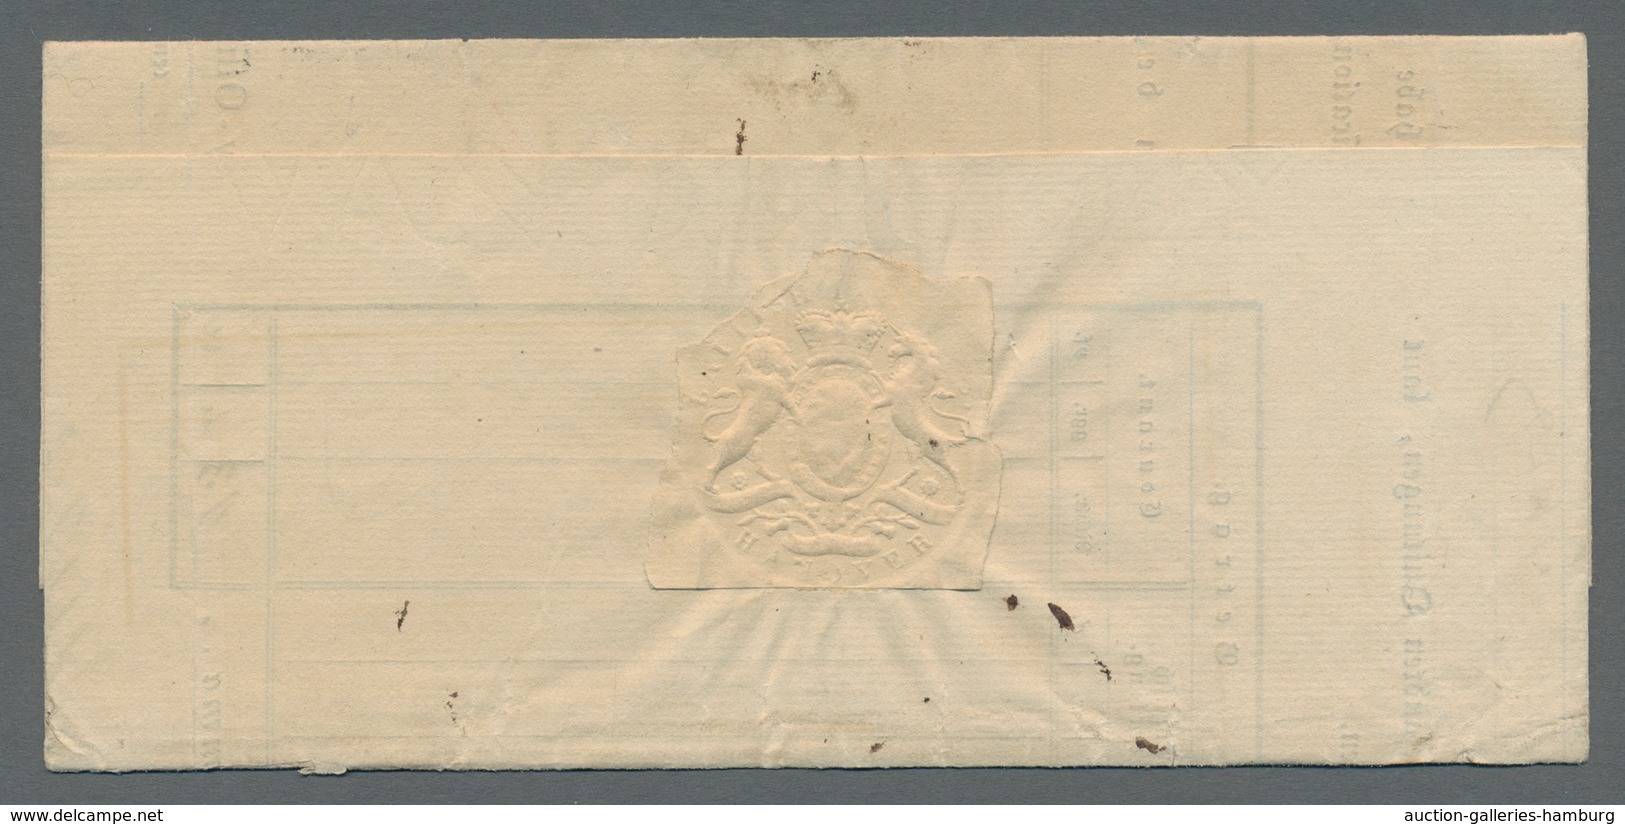 Hannover - Vorphilatelie: 1773-1858, hochinteressante Sammlung von 38 Vorphila- bzw. markenlosen Bri